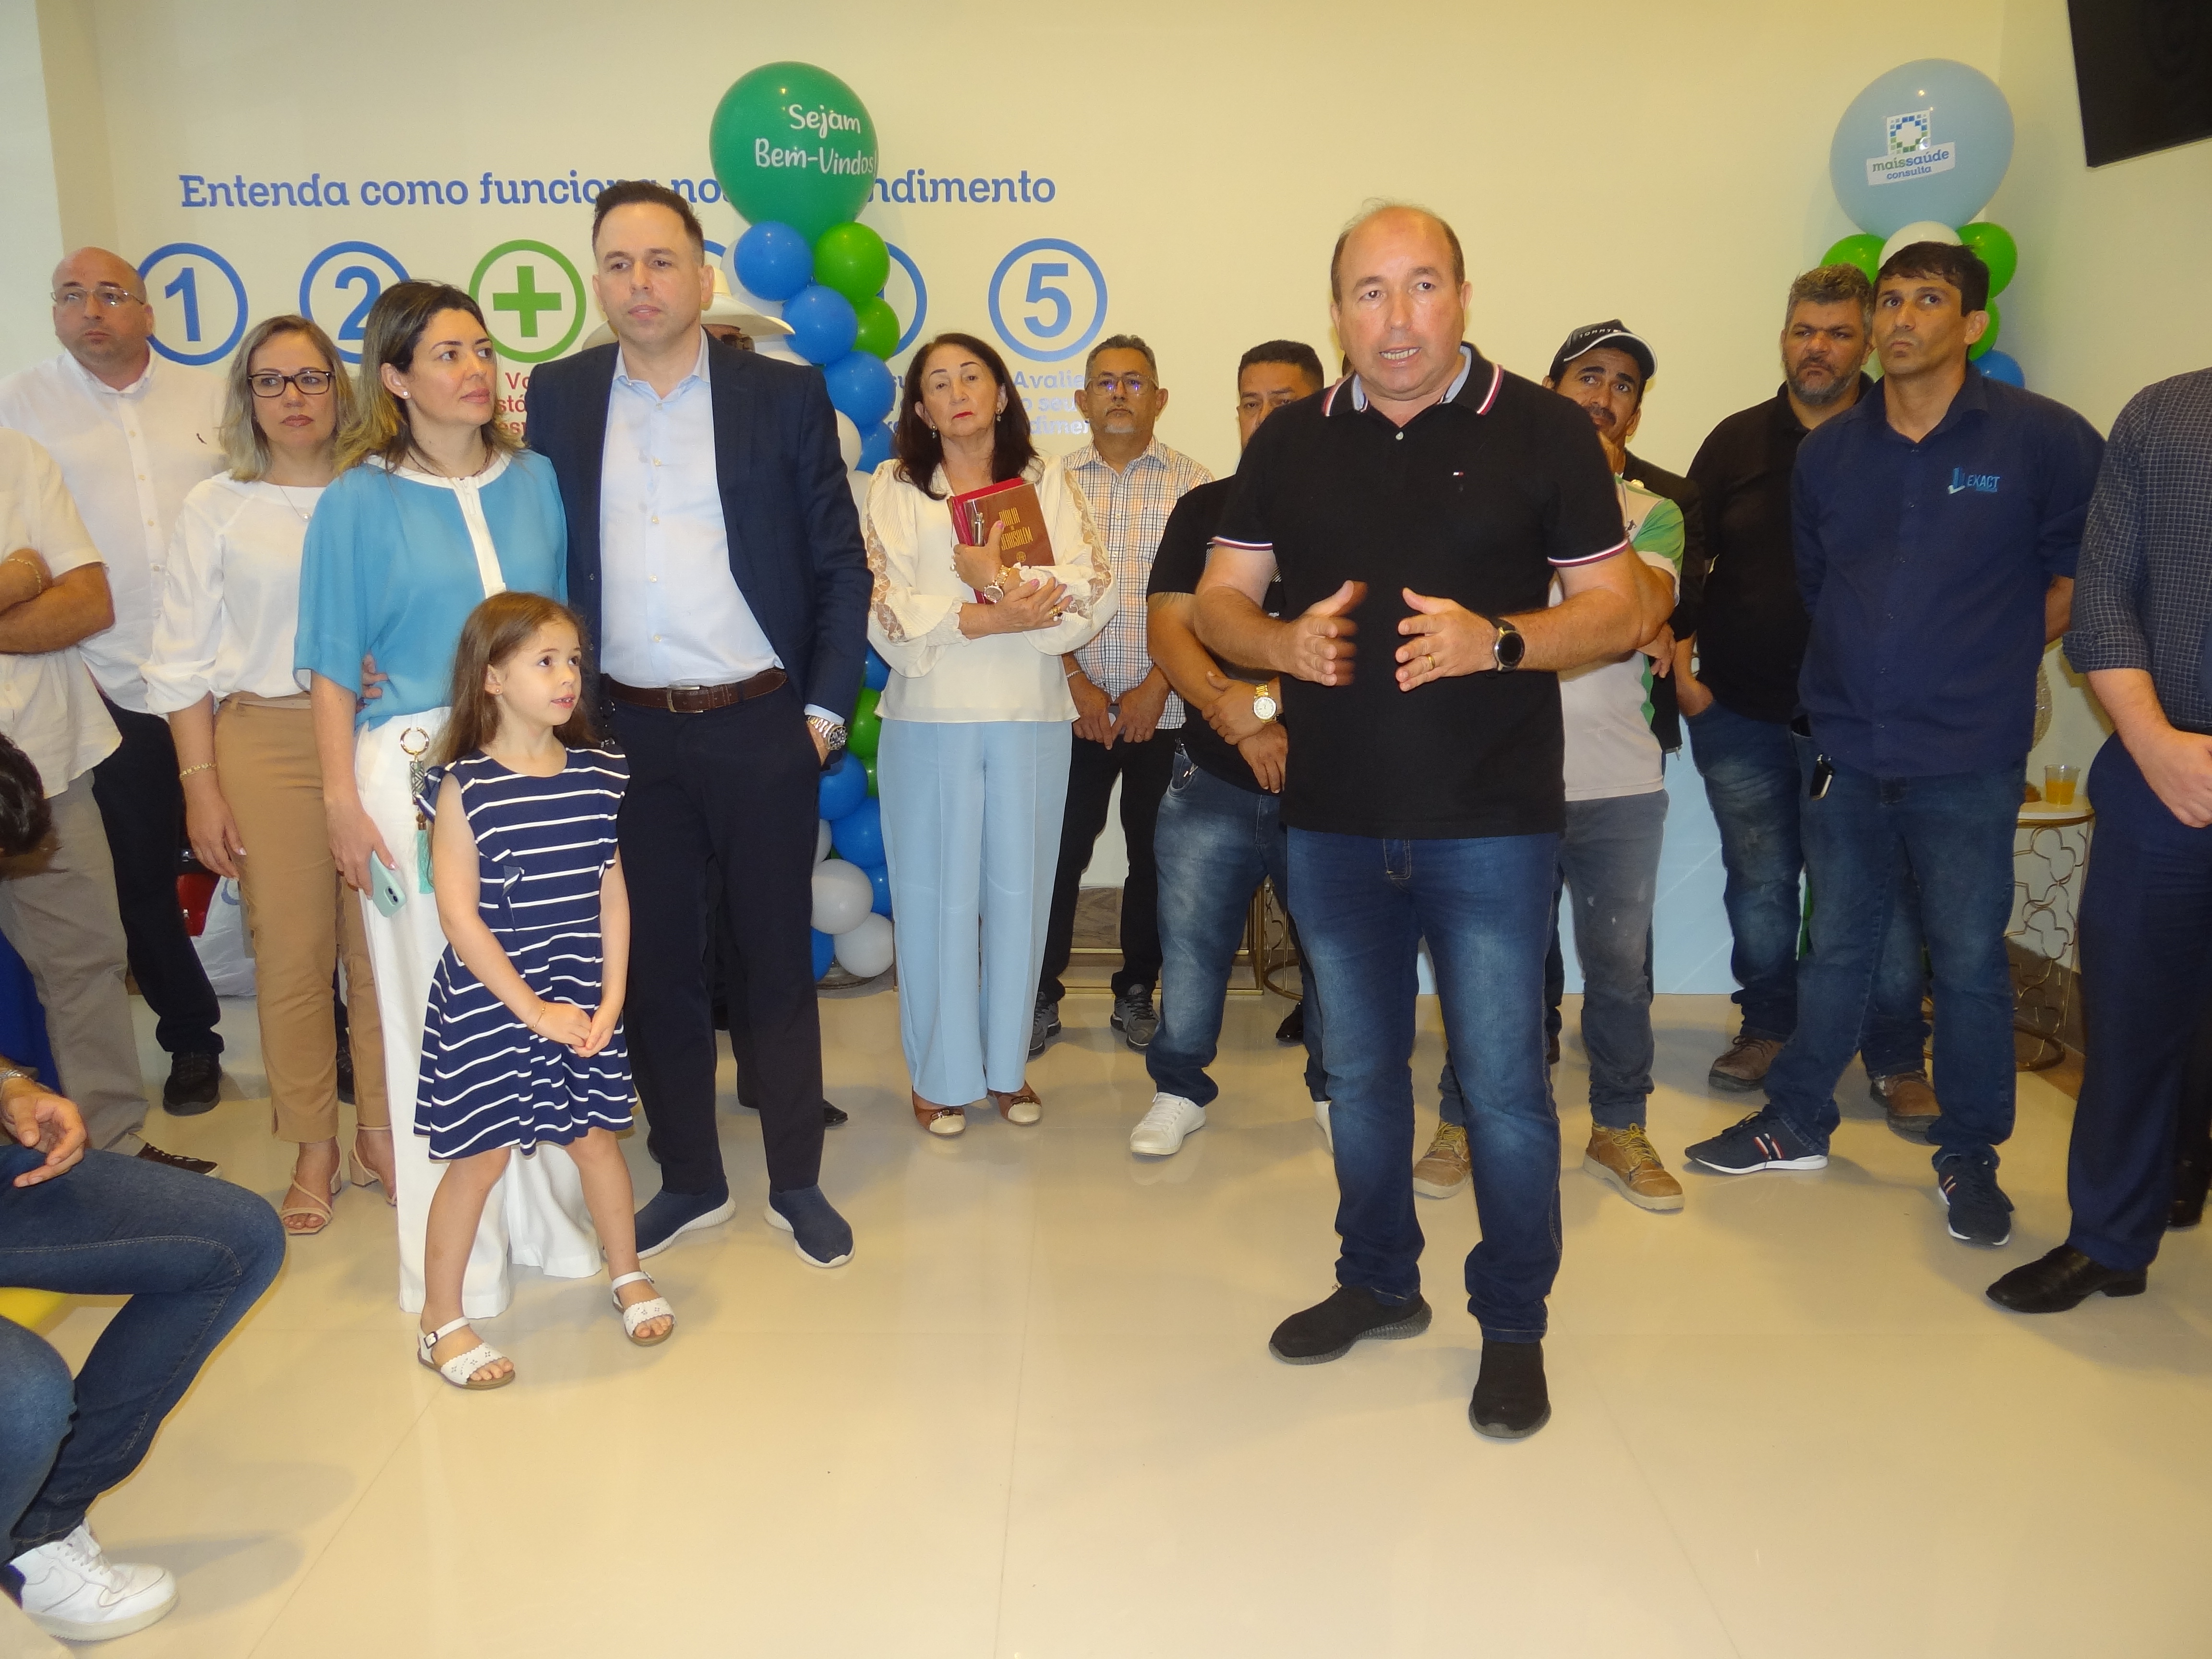 Inauguração da Clínica Mais Saúde - Zona Sul de Porto Velho